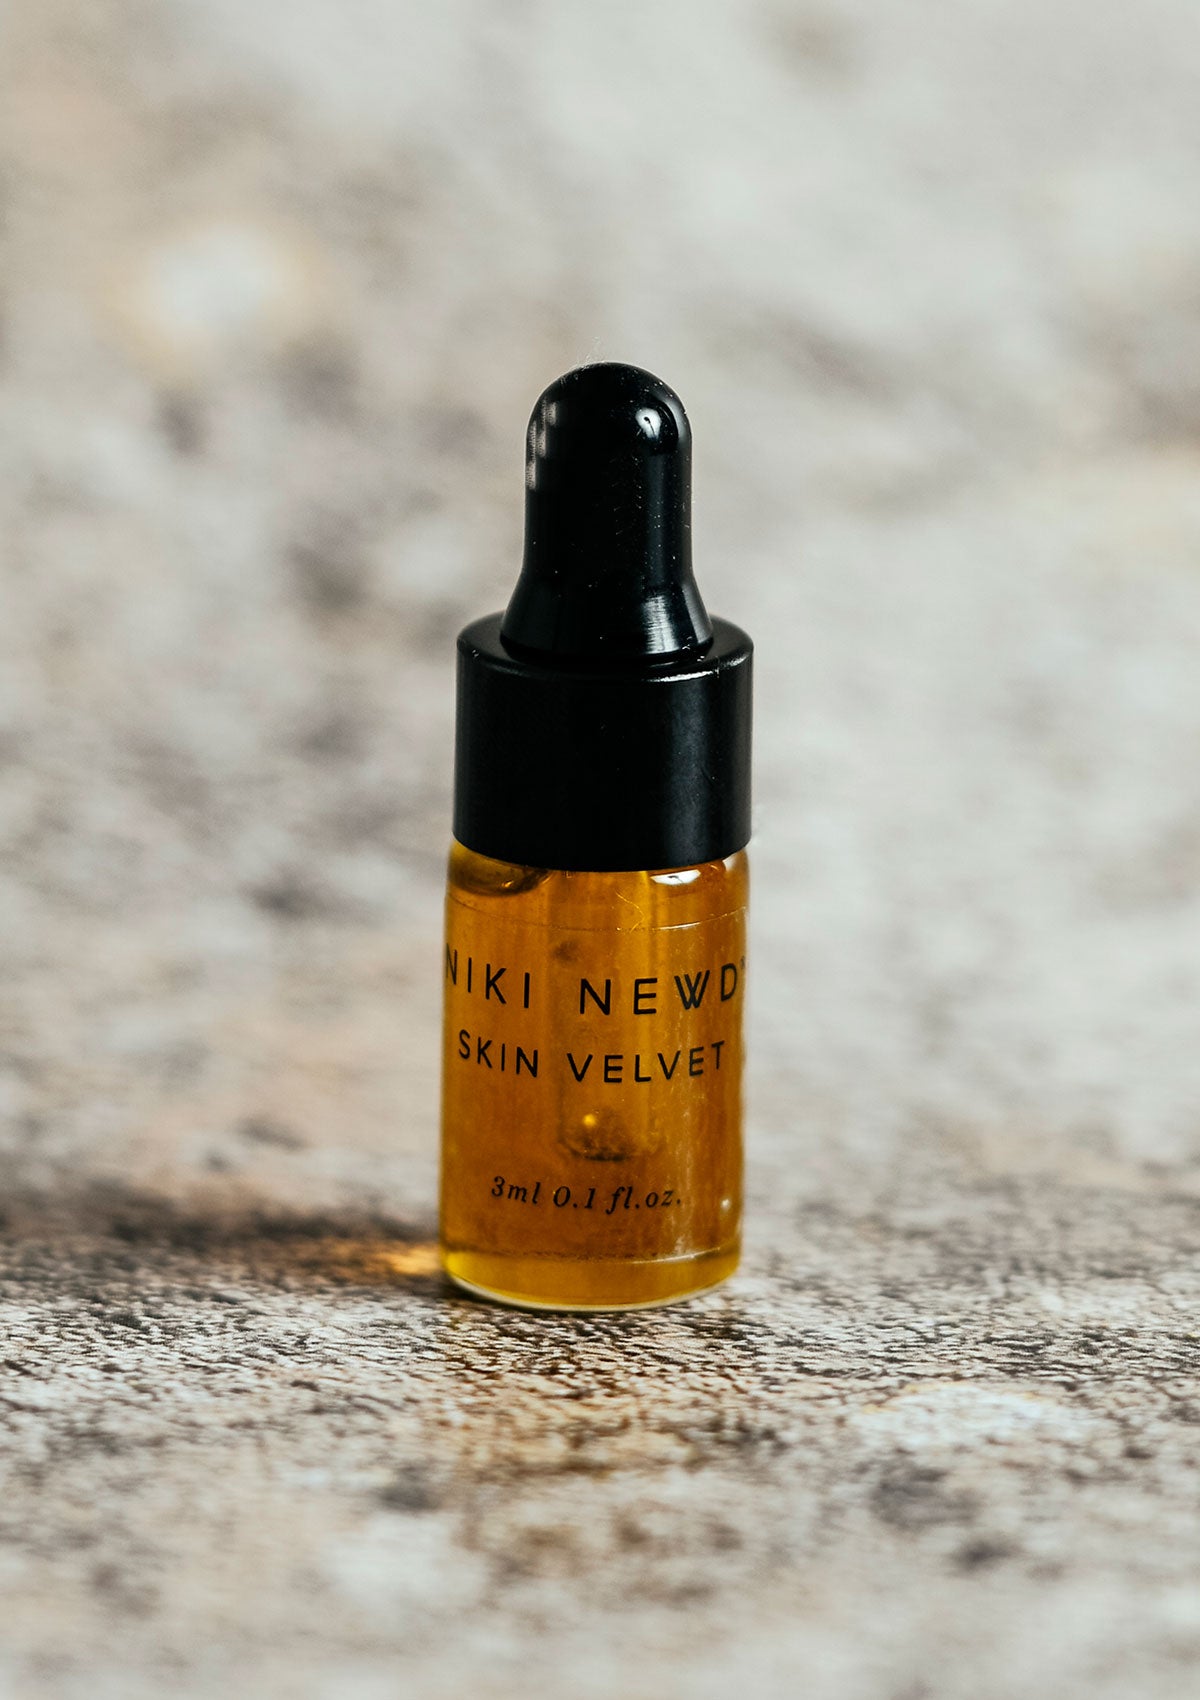 Niki Newd® Skin Velvet oil serum tester